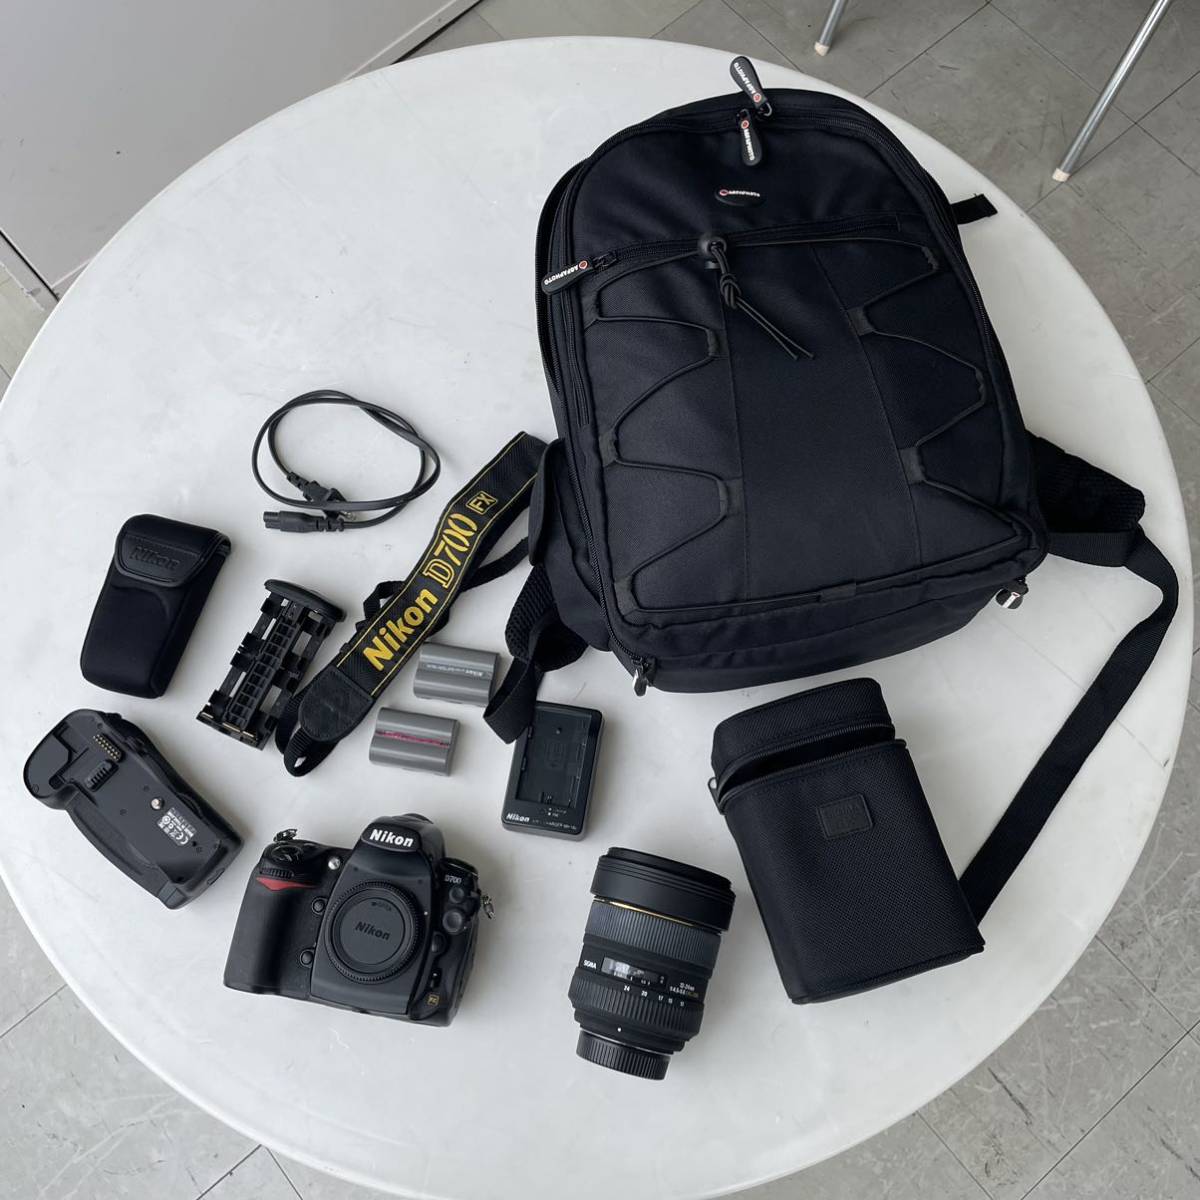 Nikon ニコン D700 カメラ ボディ SIGMA EX 12-24 LENS レンズ バッテリーパック バッテリー2個 バッグ など セット 値下げ